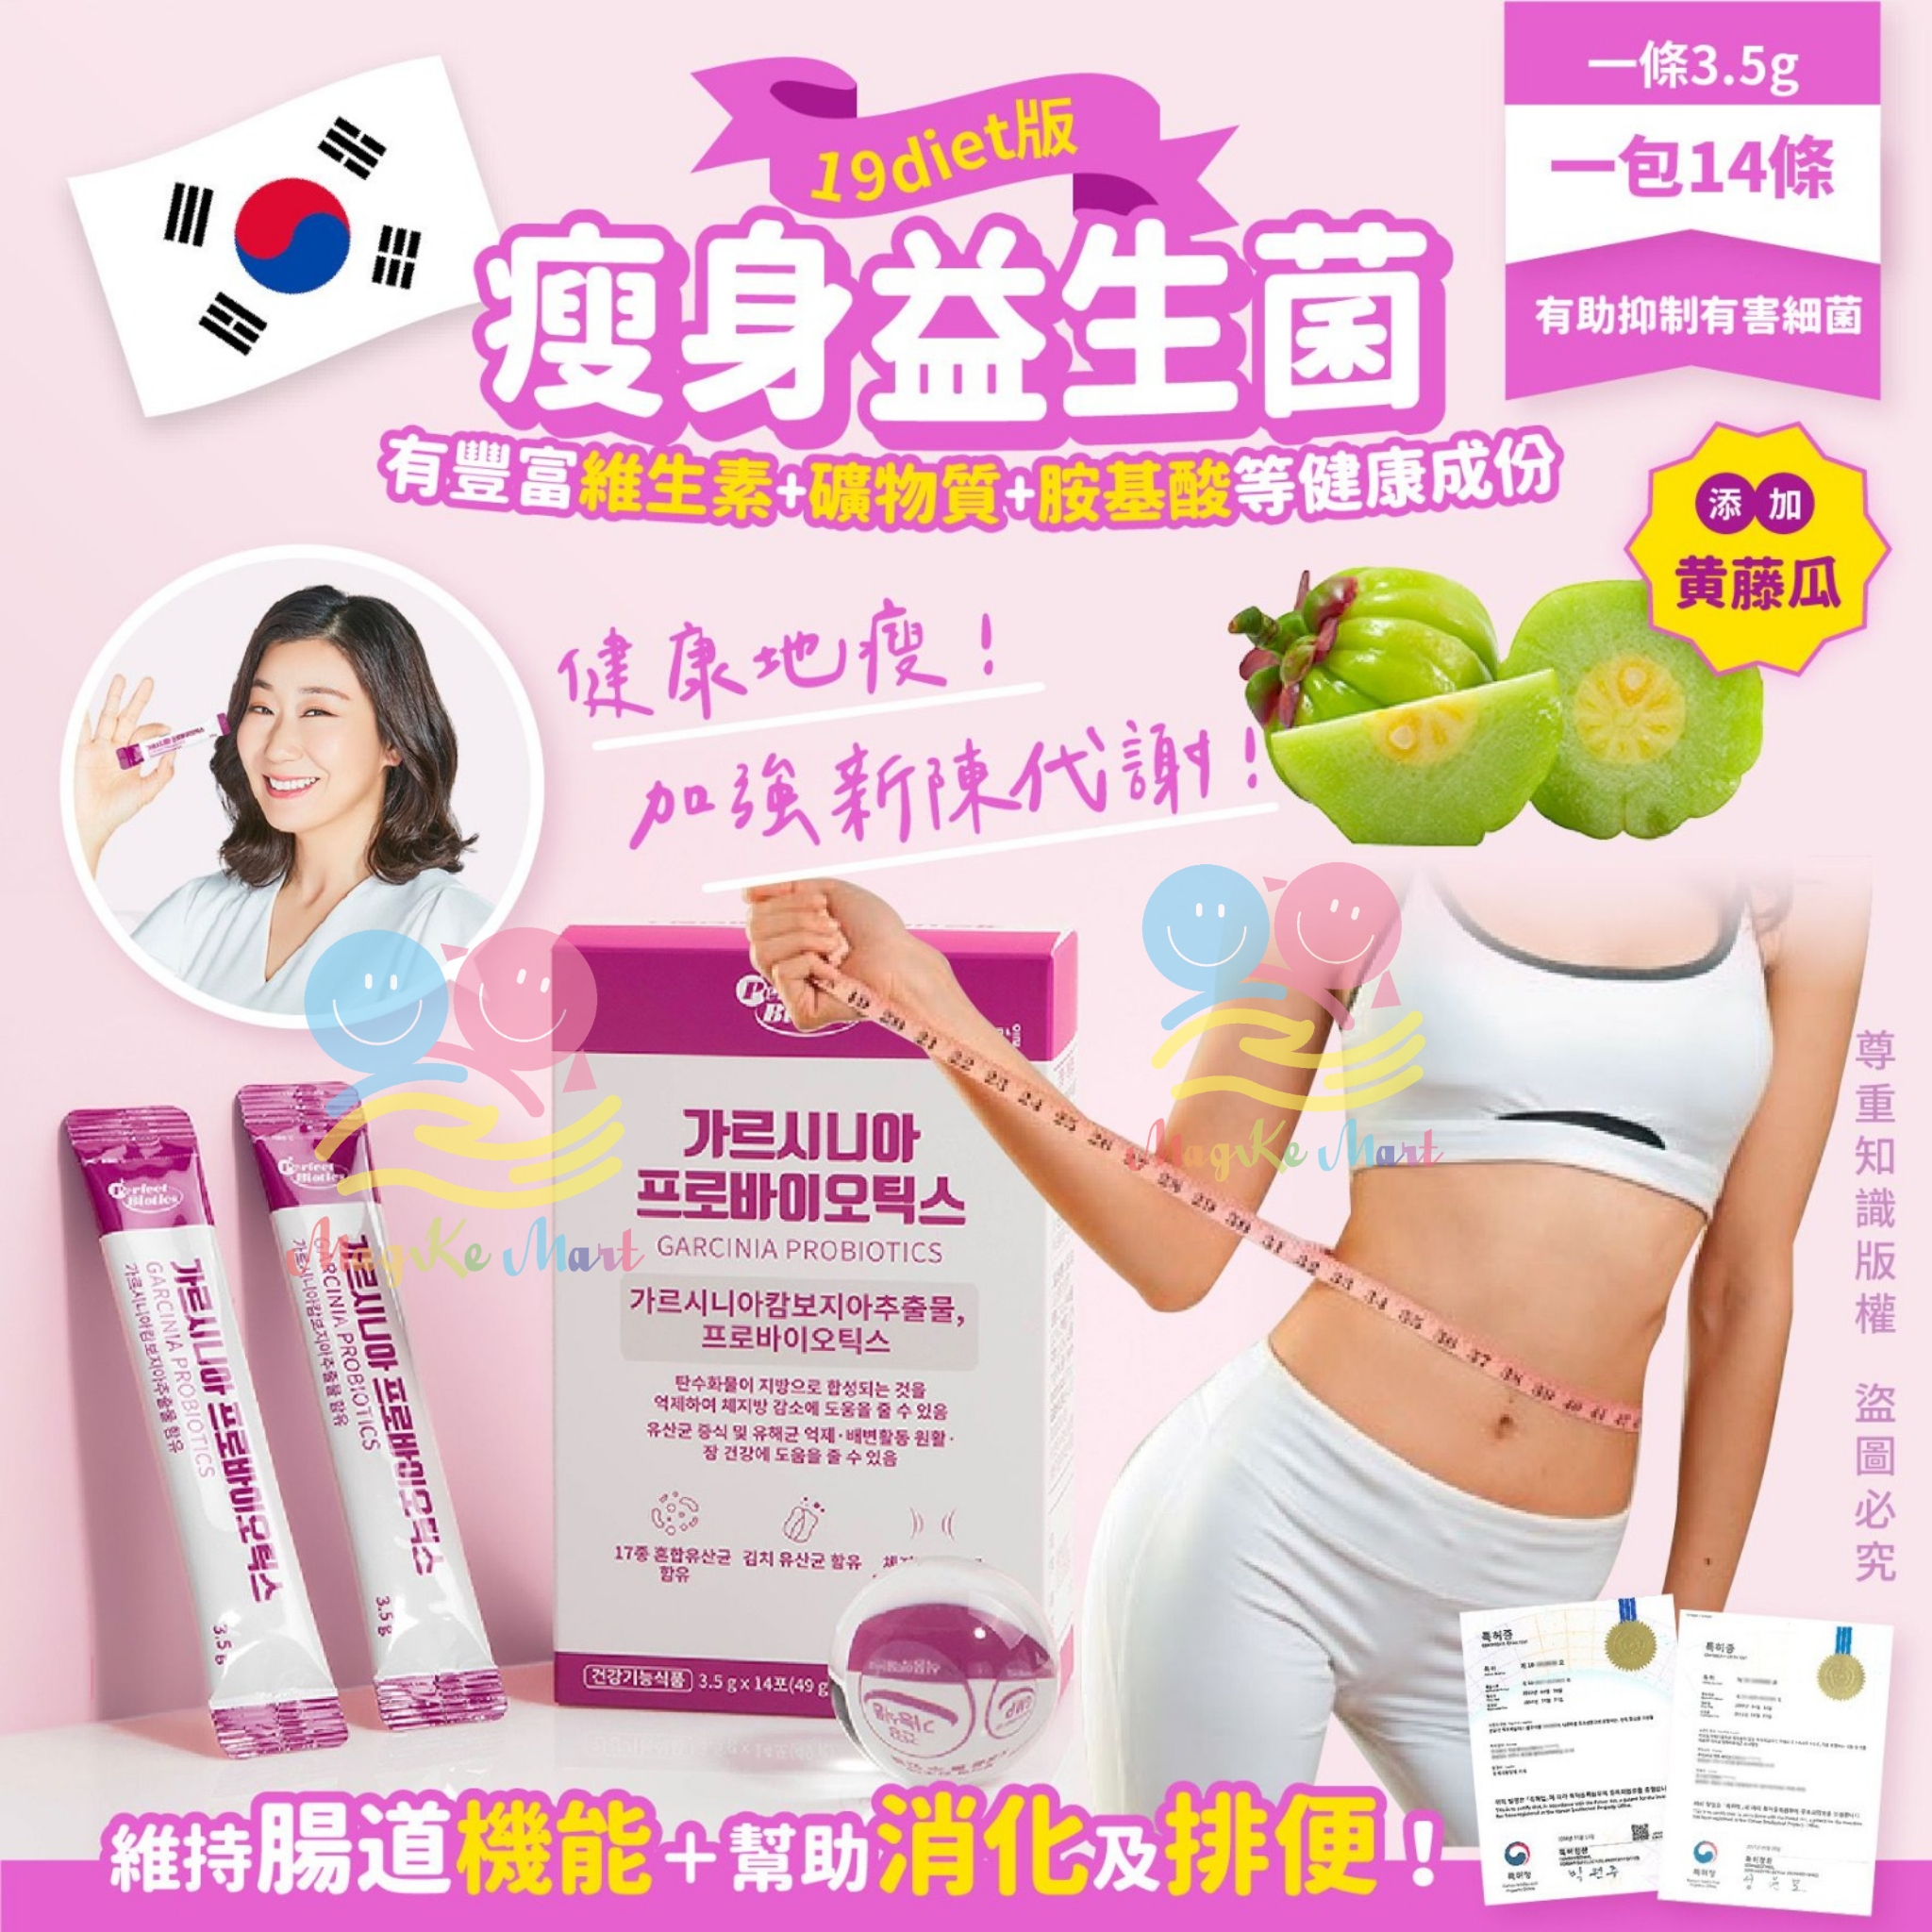 韓國製超級益生菌19diet版 (1套2盒)